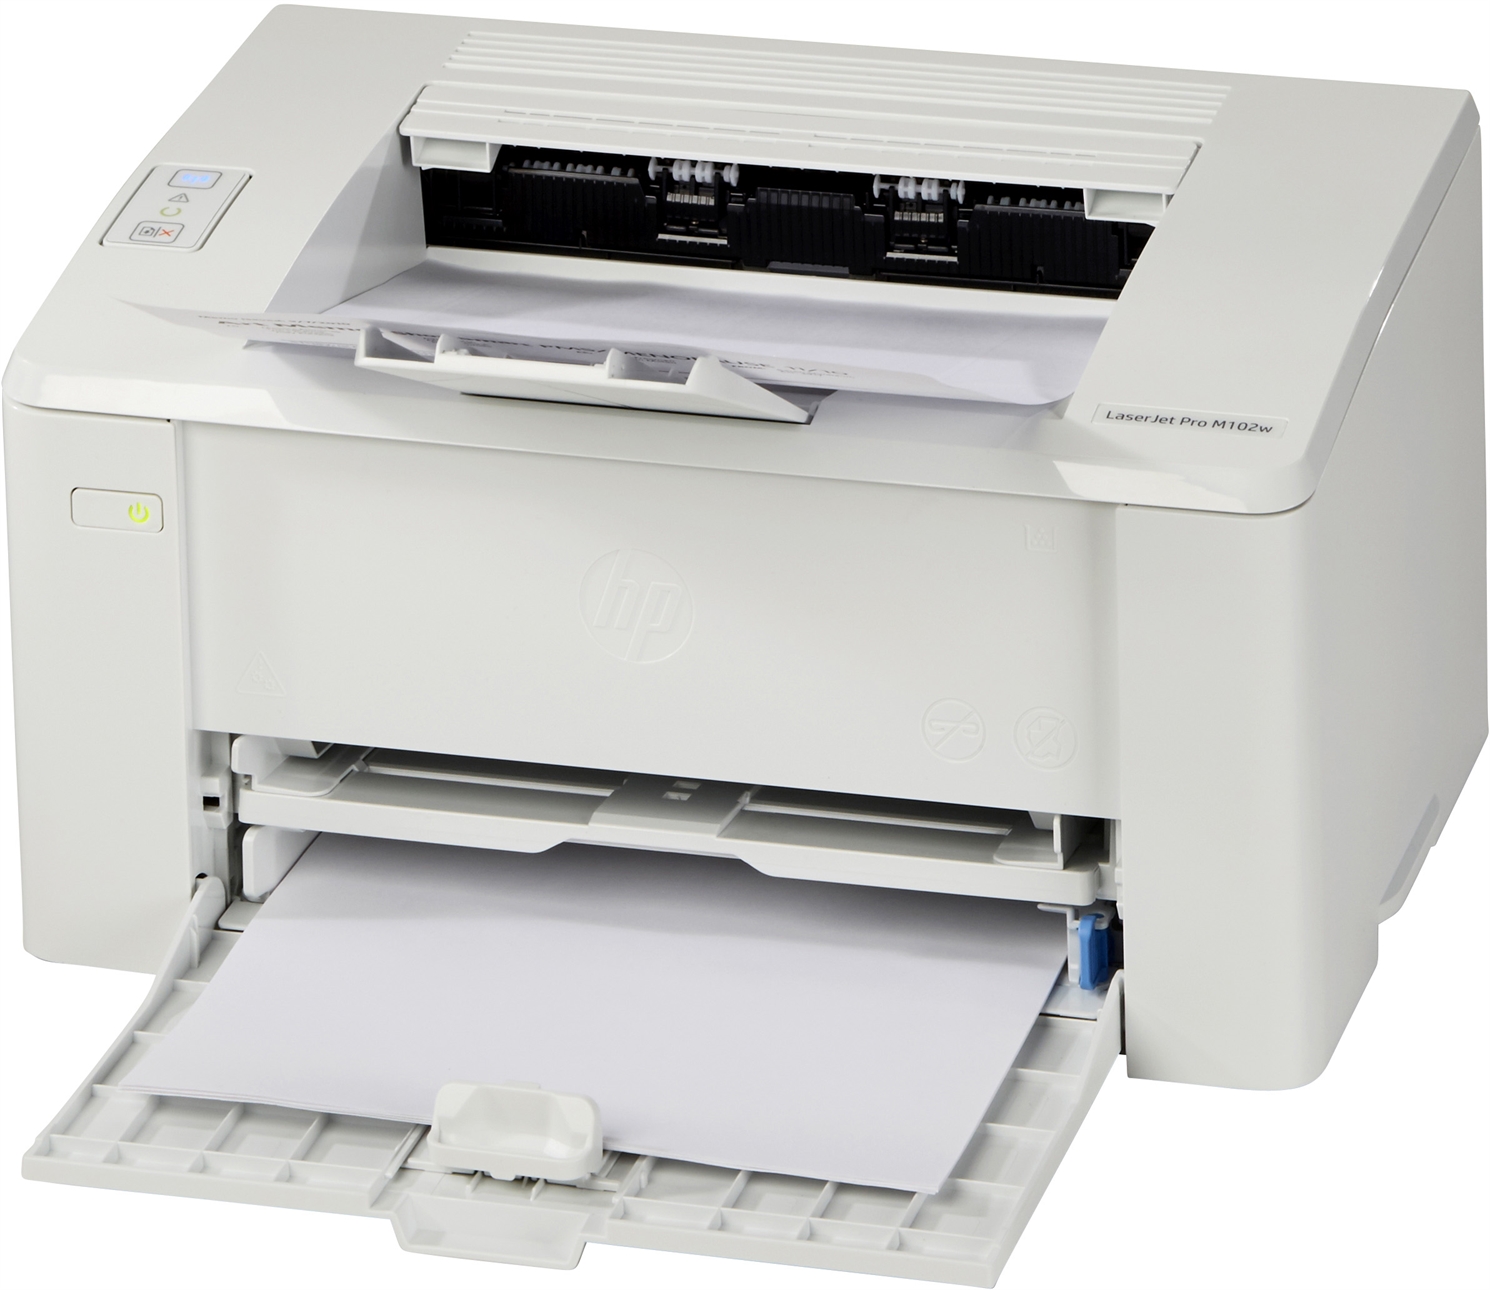 Impresora Hp Laserjet Pro M102w Opiniones Y Precios Ocu 6771